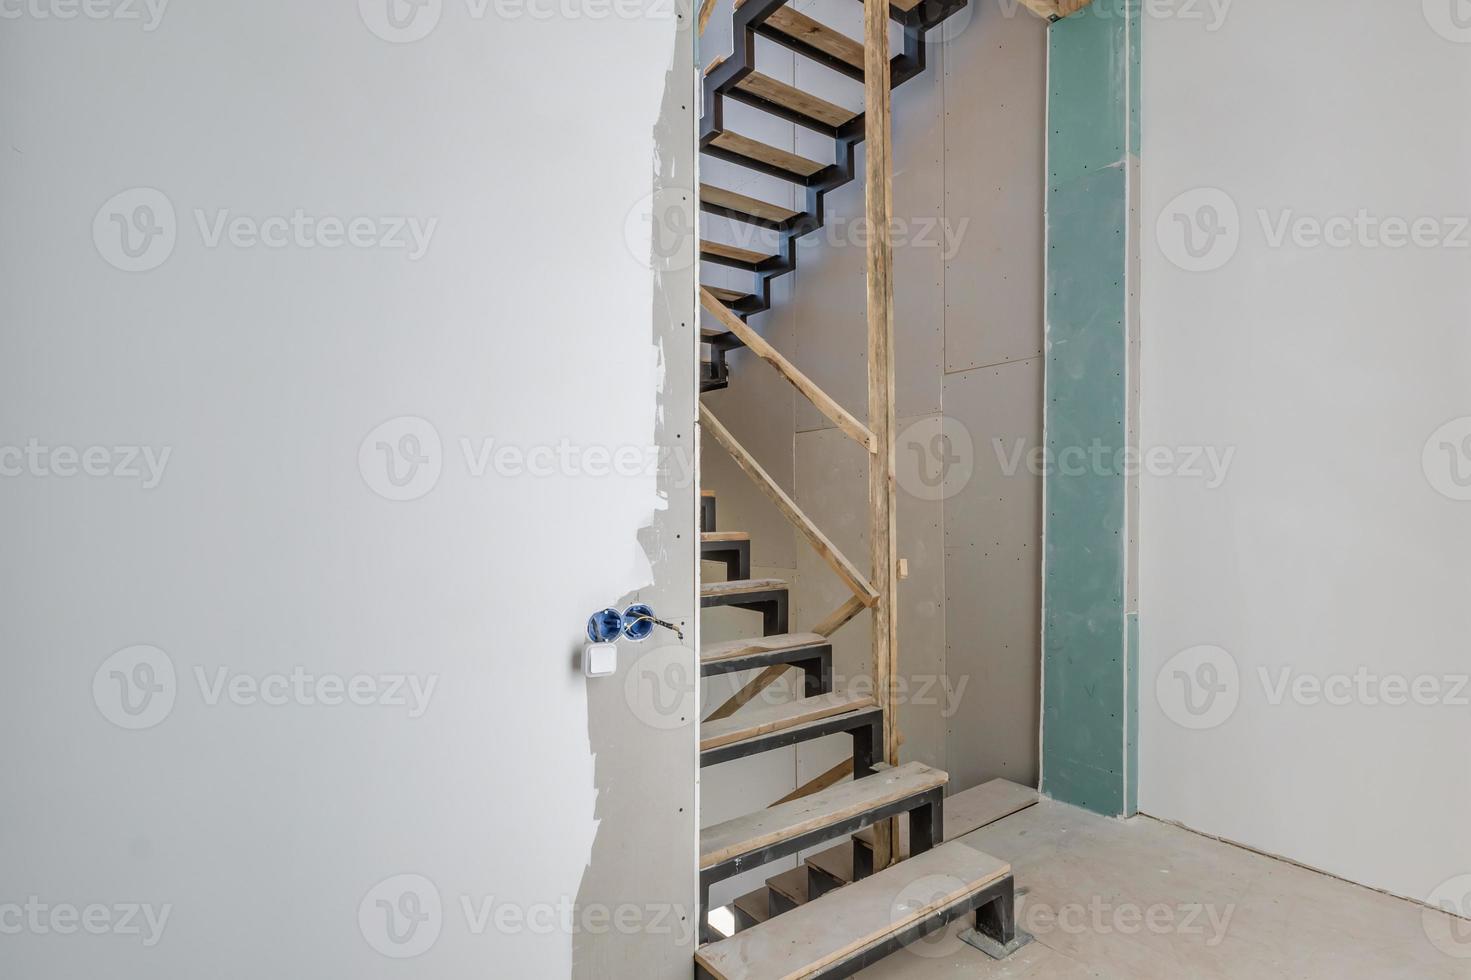 salle blanche vide sans réparation et mobilier avec échafaudage avec escalier en bois photo